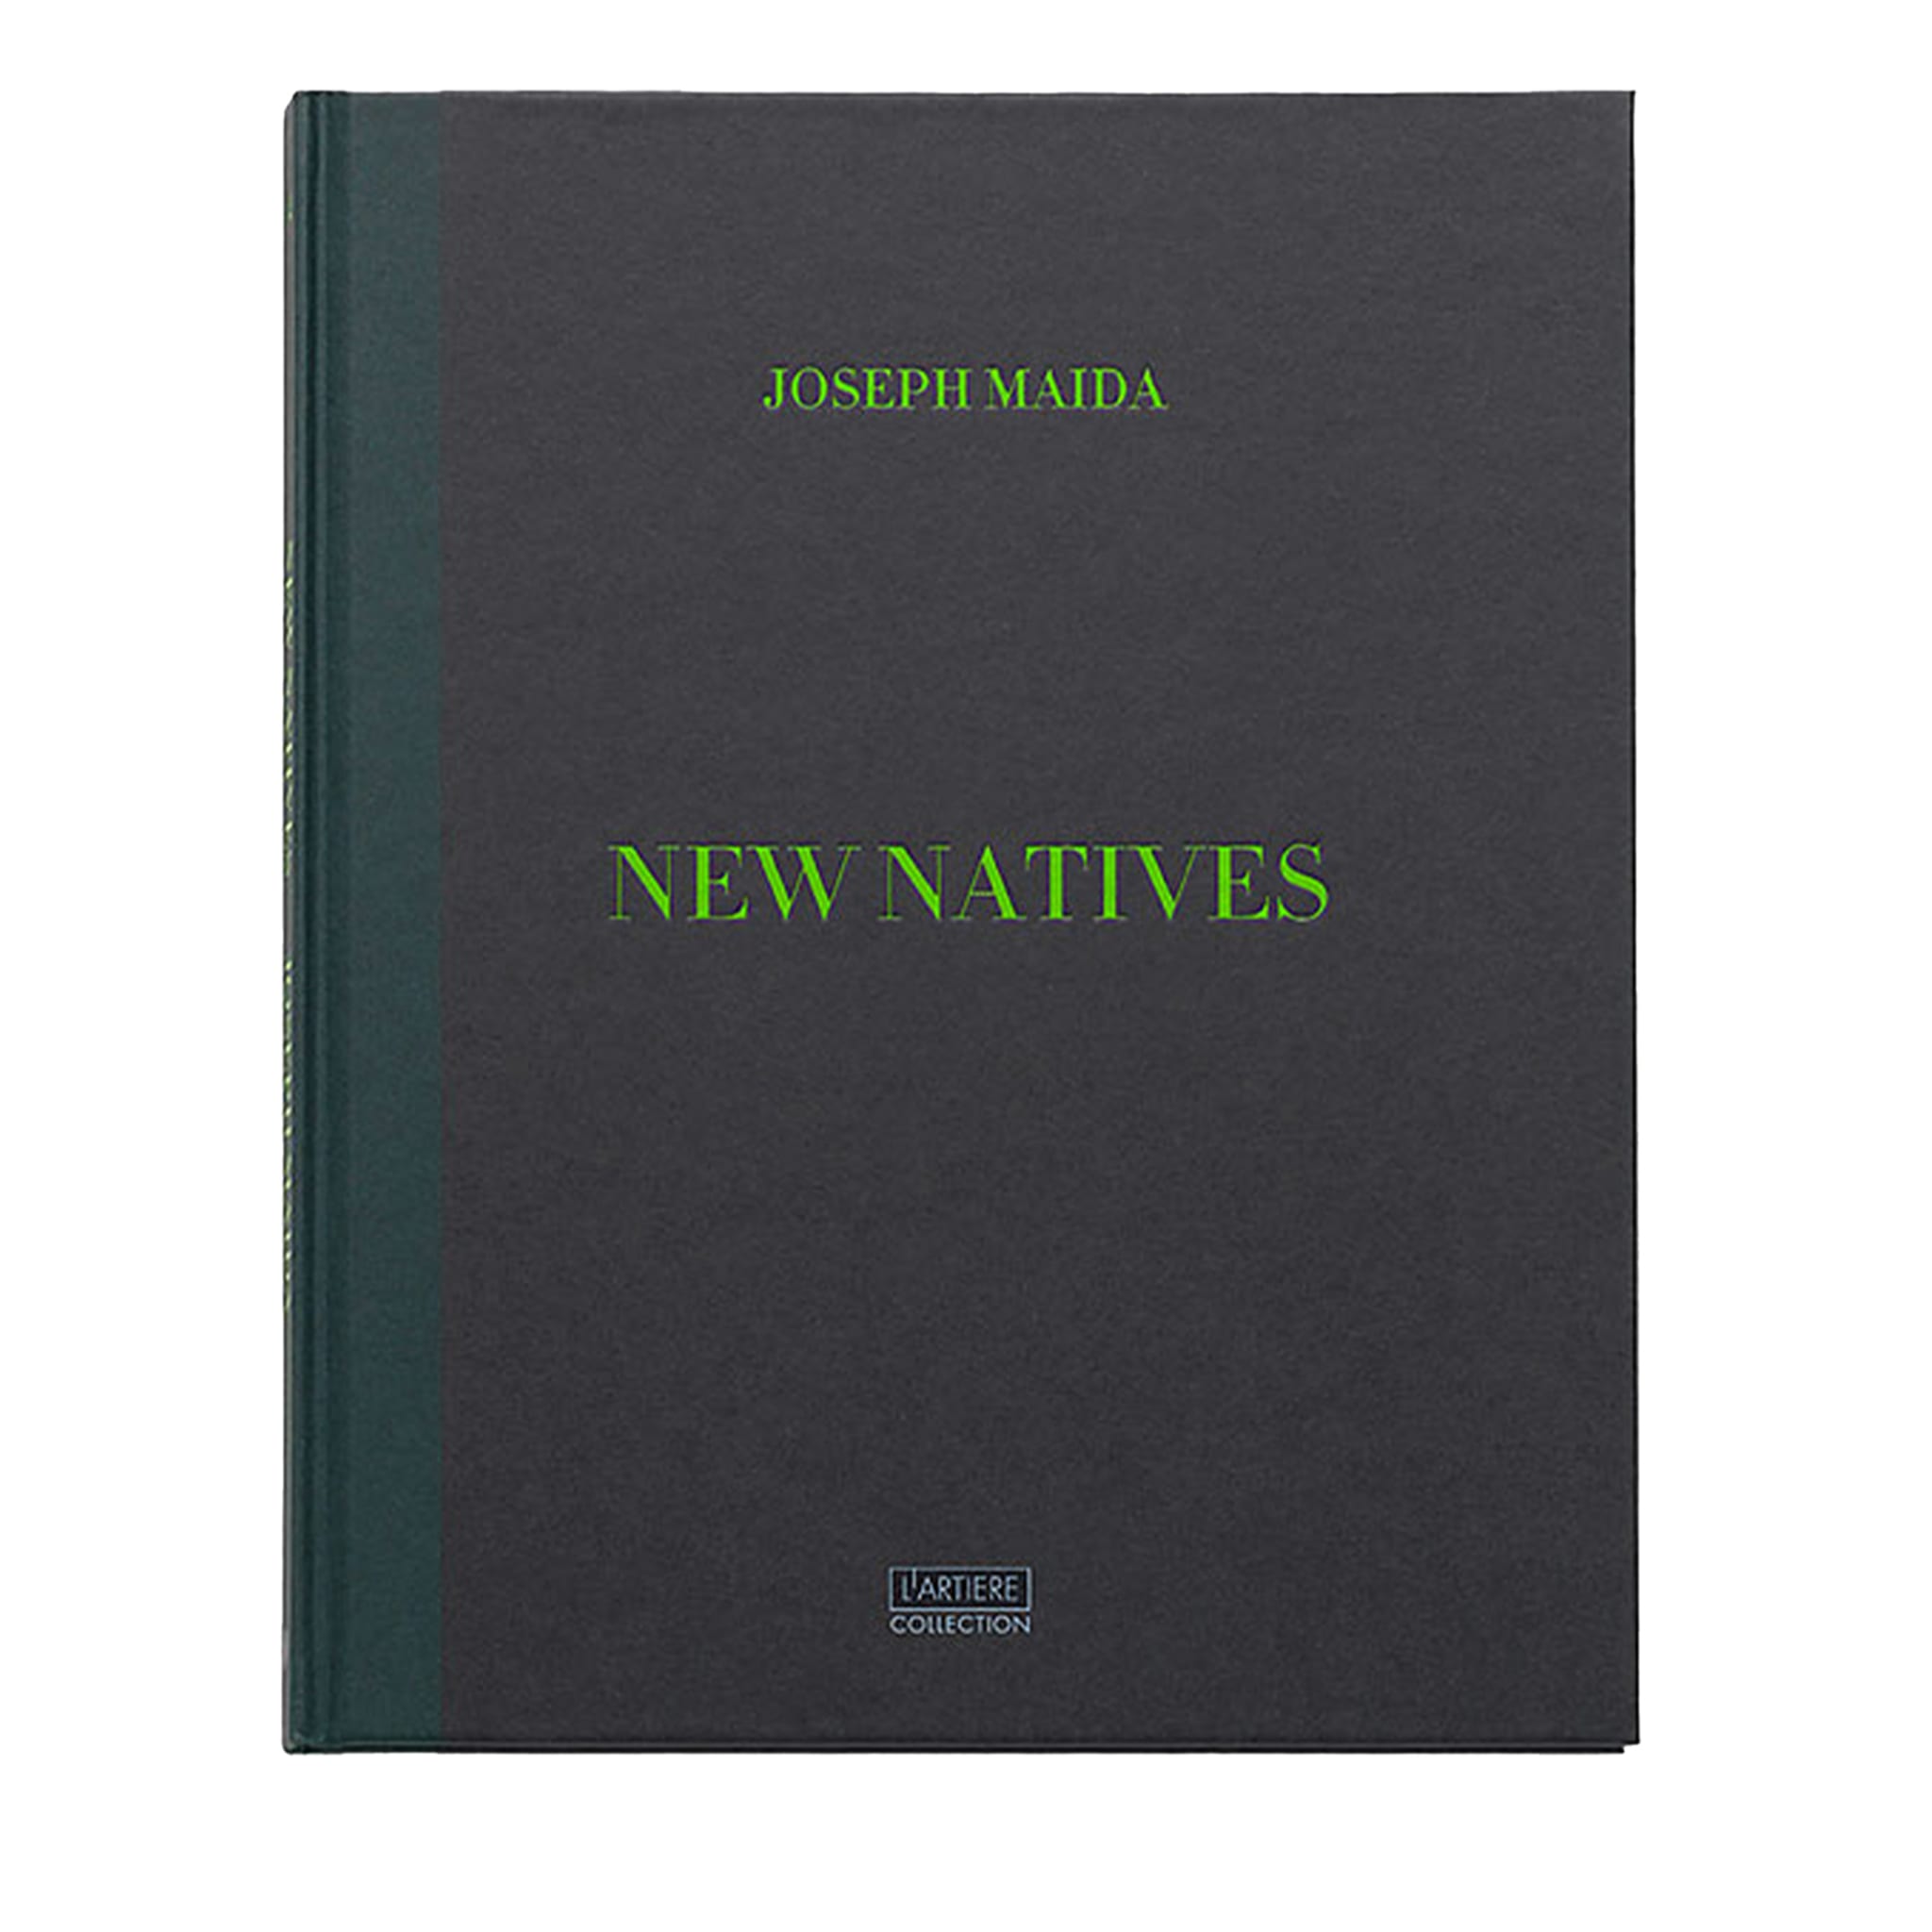 New Natives - Edizione speciale in cofanetto - Joseph Maida - Vista principale